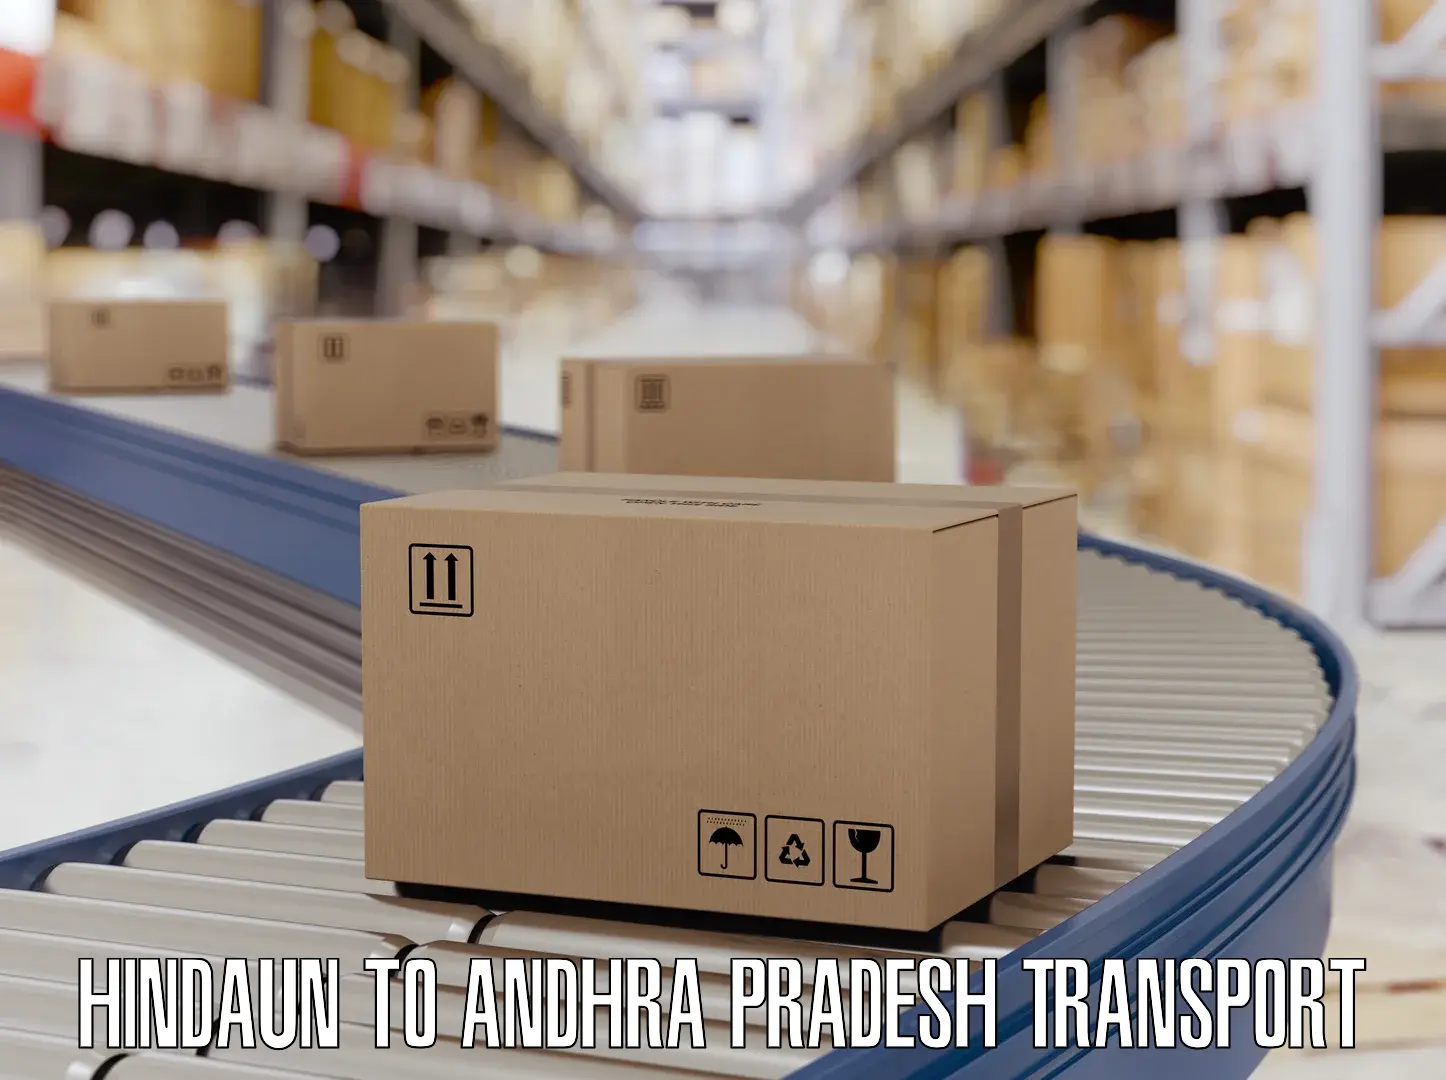 Land transport services Hindaun to Andhra Pradesh